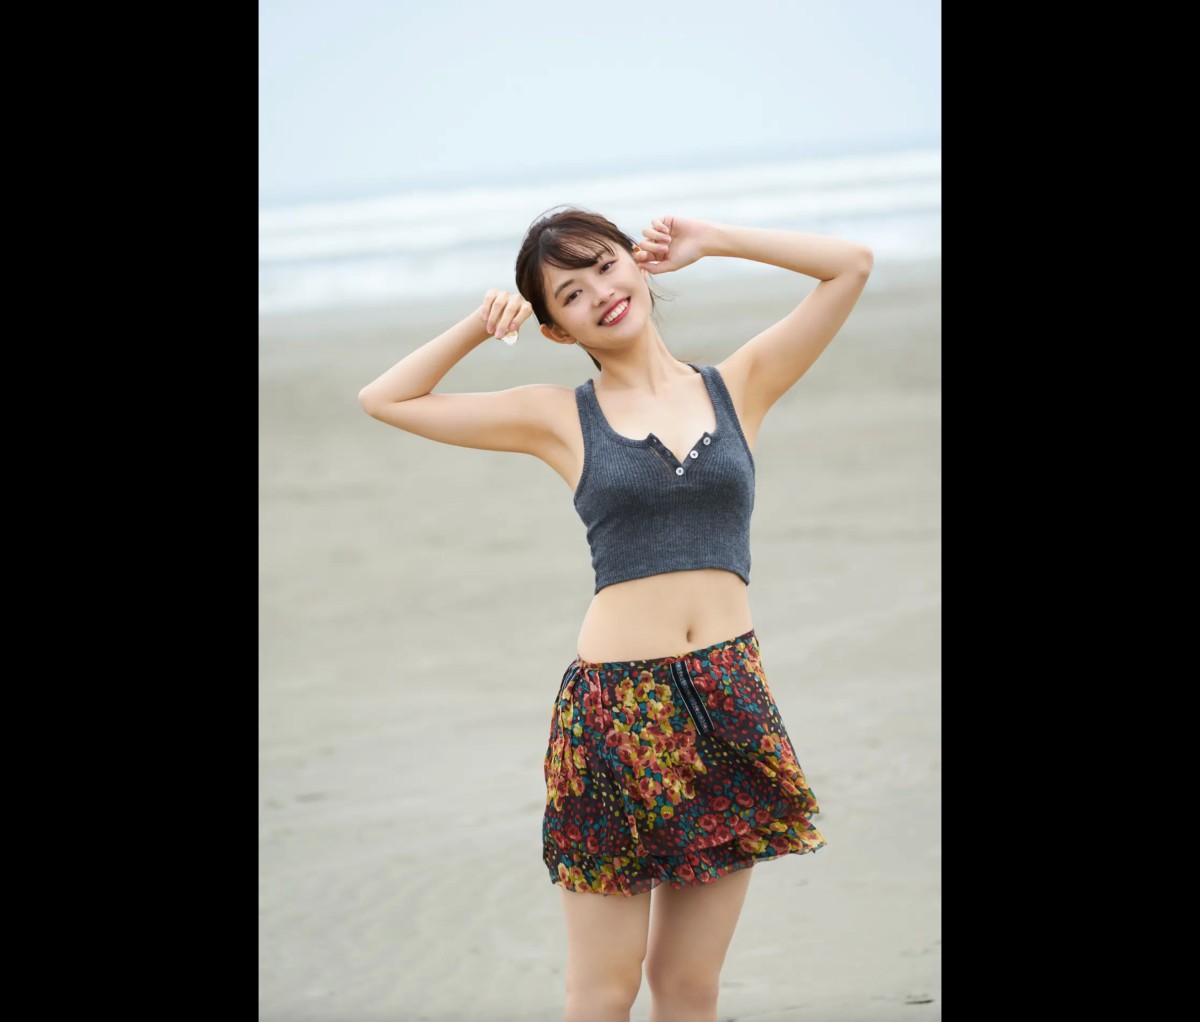 FRIDAYデジタル写真集 Hinami Mori 森日菜美 Seaside Girl Full Version 0030 3807096730.jpg